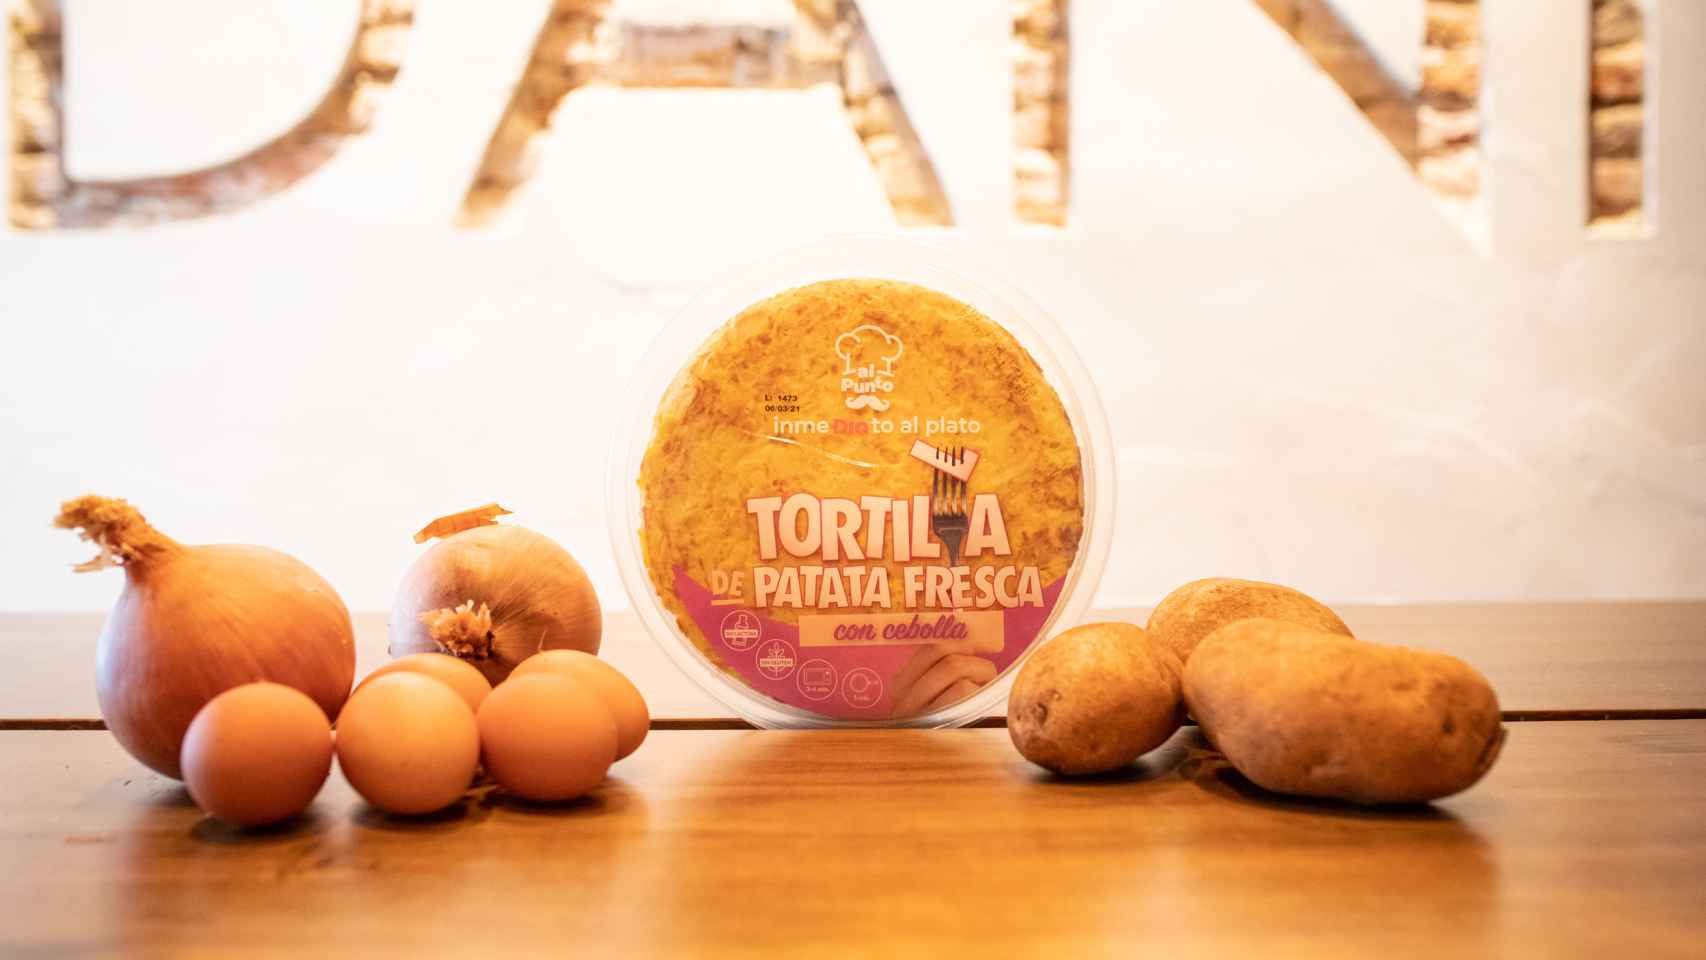 La tortilla de patata con cebolla de Dia Al Punto, la gama de precocinados del supermercado.